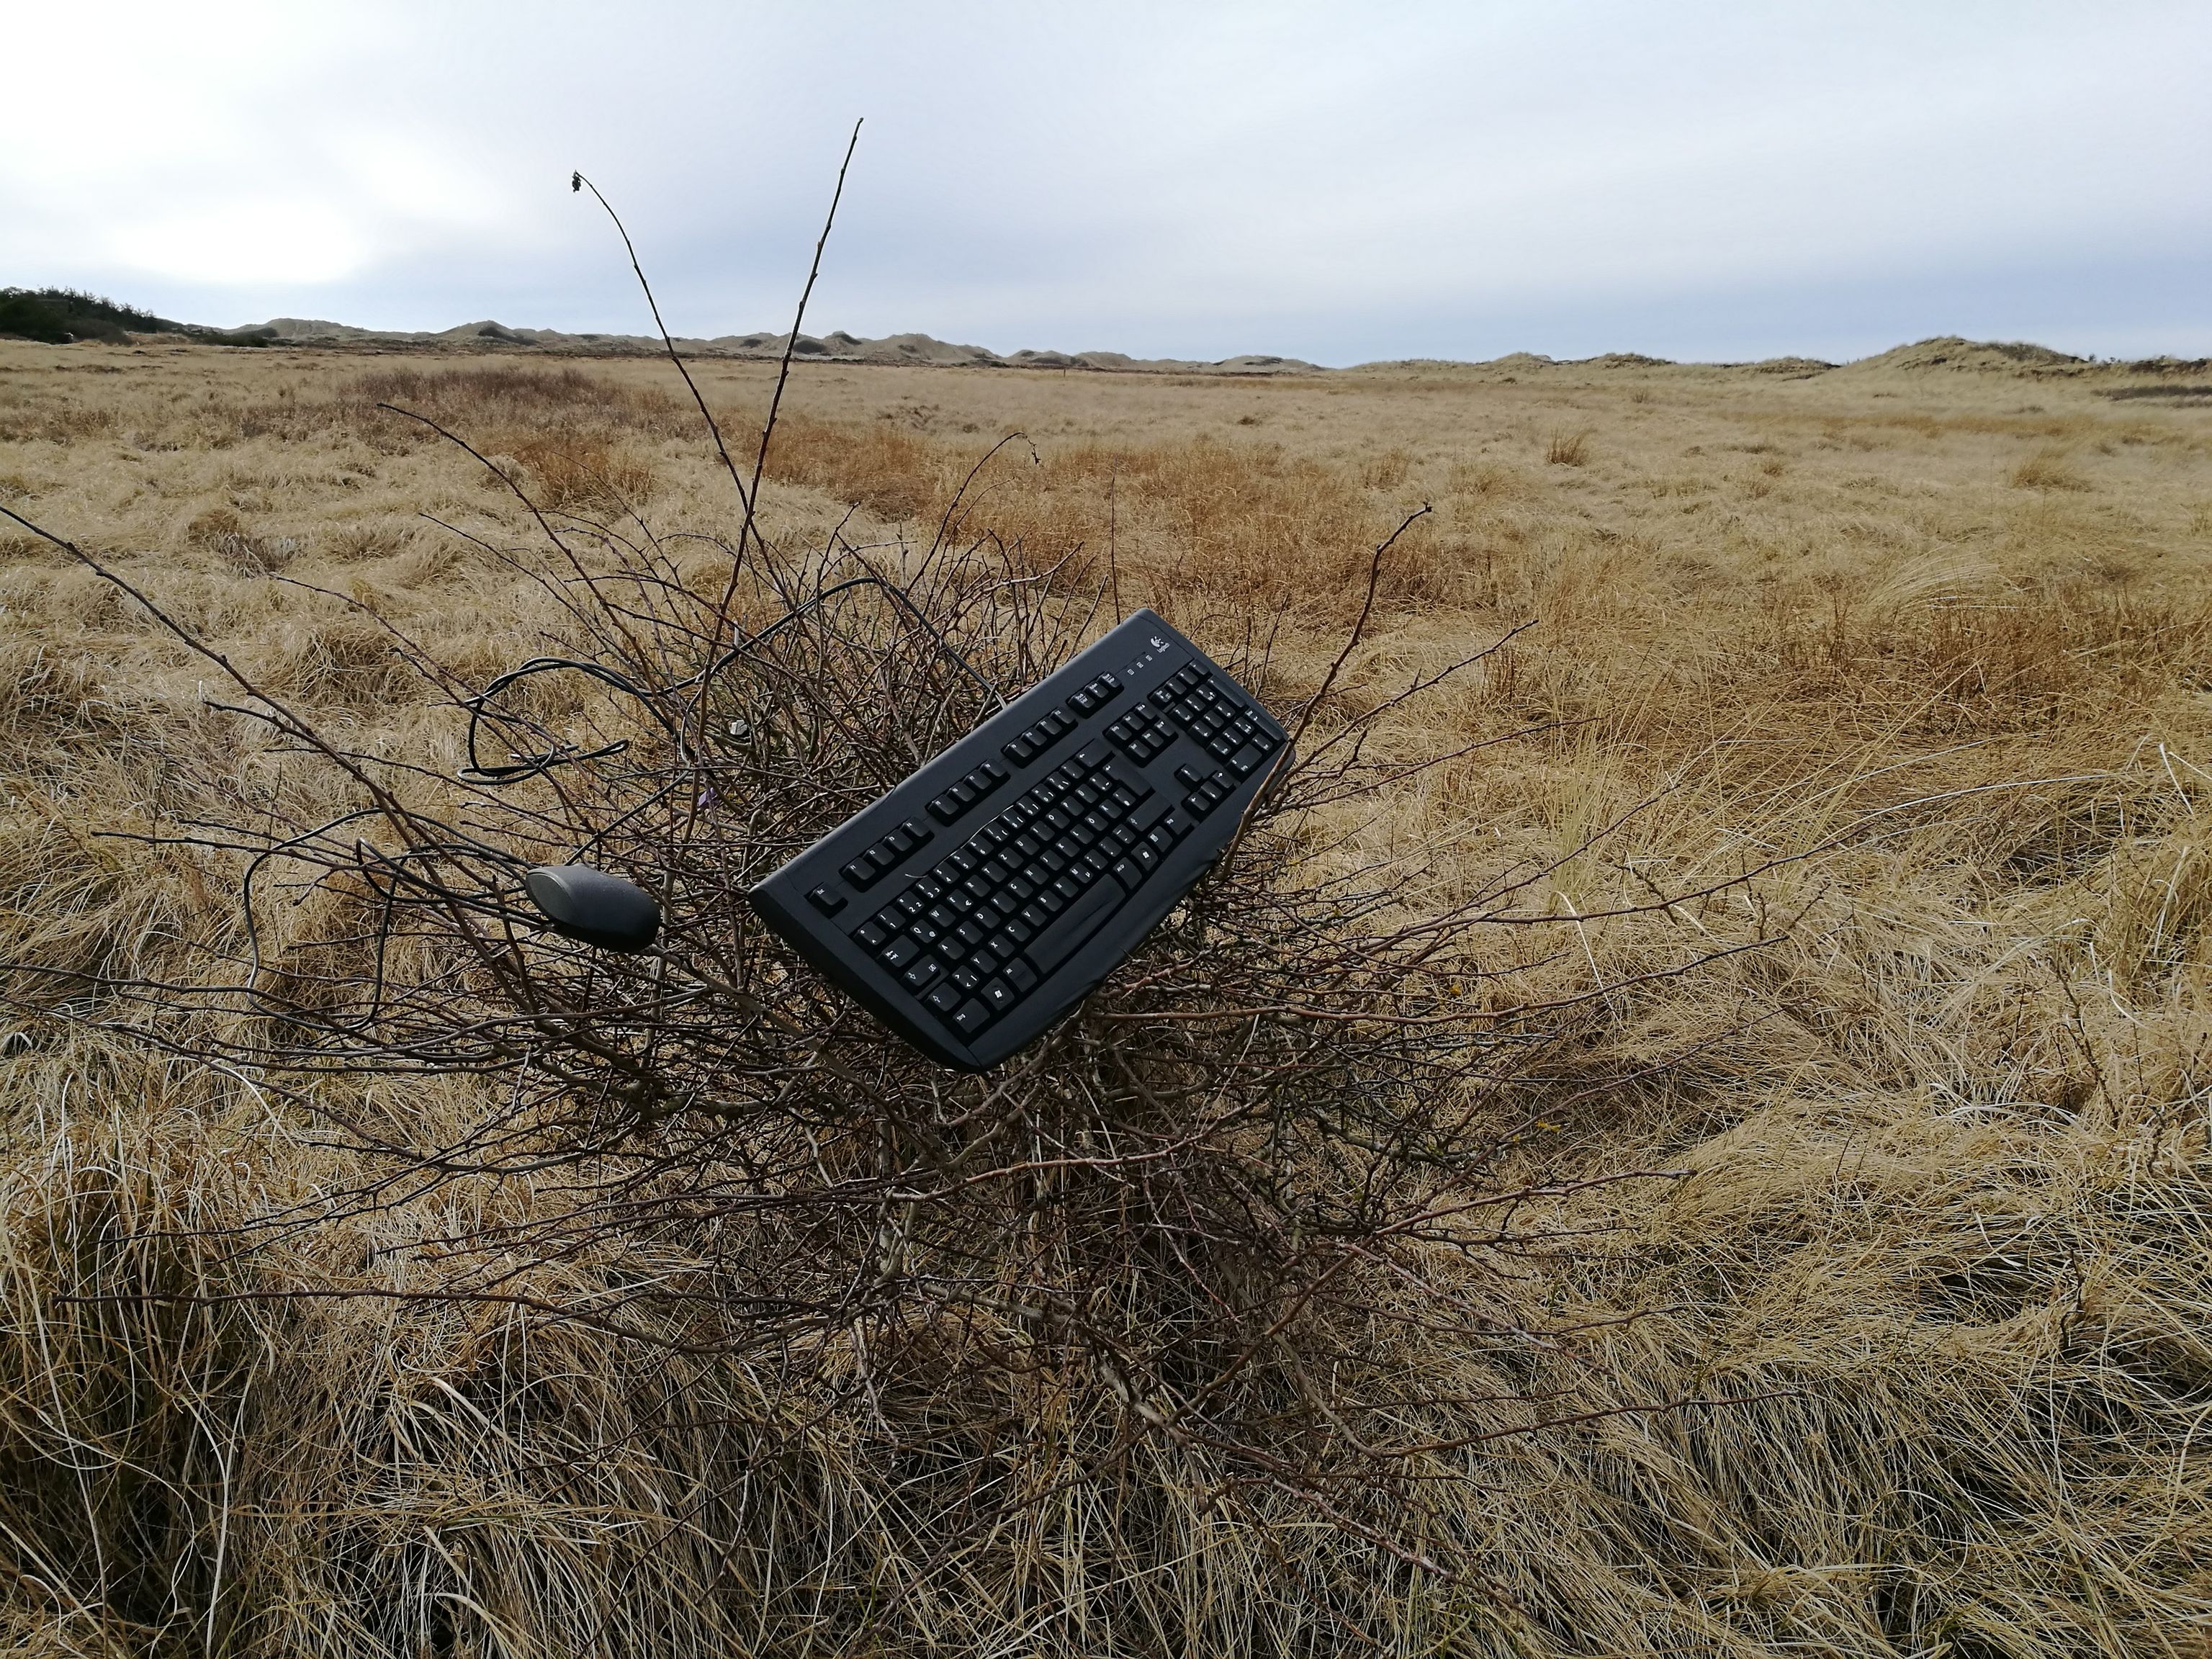 Eine Tastatur und eine Maus, die in einem Gestrüpp hängen. Im Hintergrund sind Dünen zu sehen.